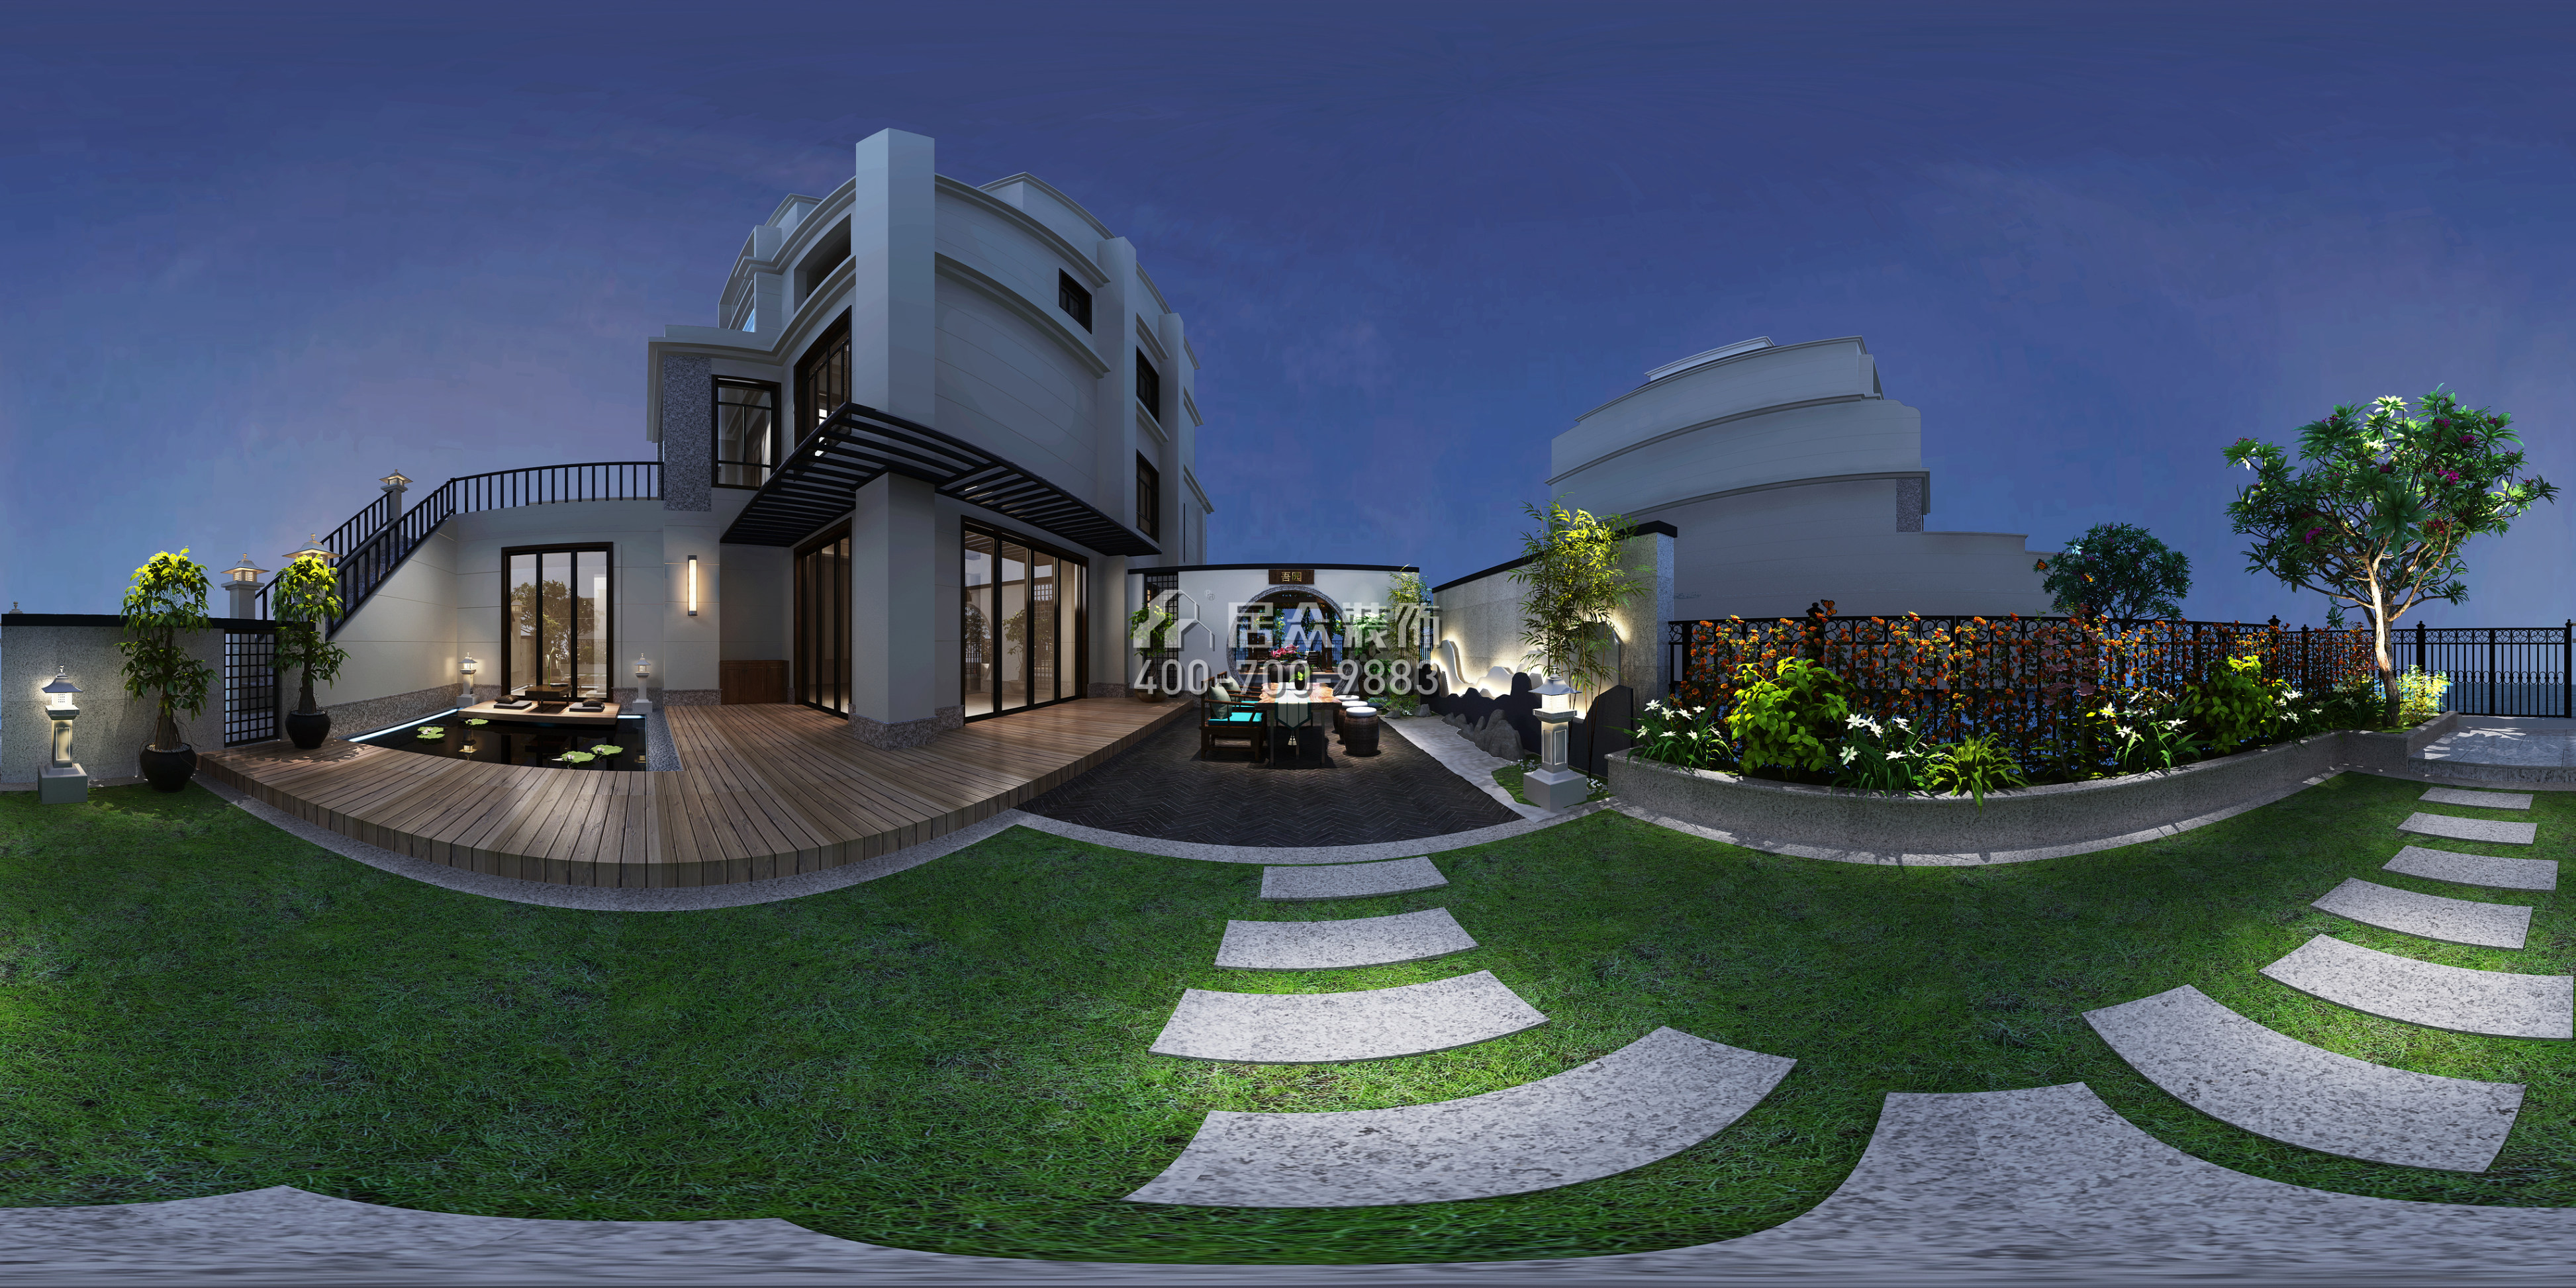 天利天鹅湾450平方米中式风格别墅户型外景图装修效果图